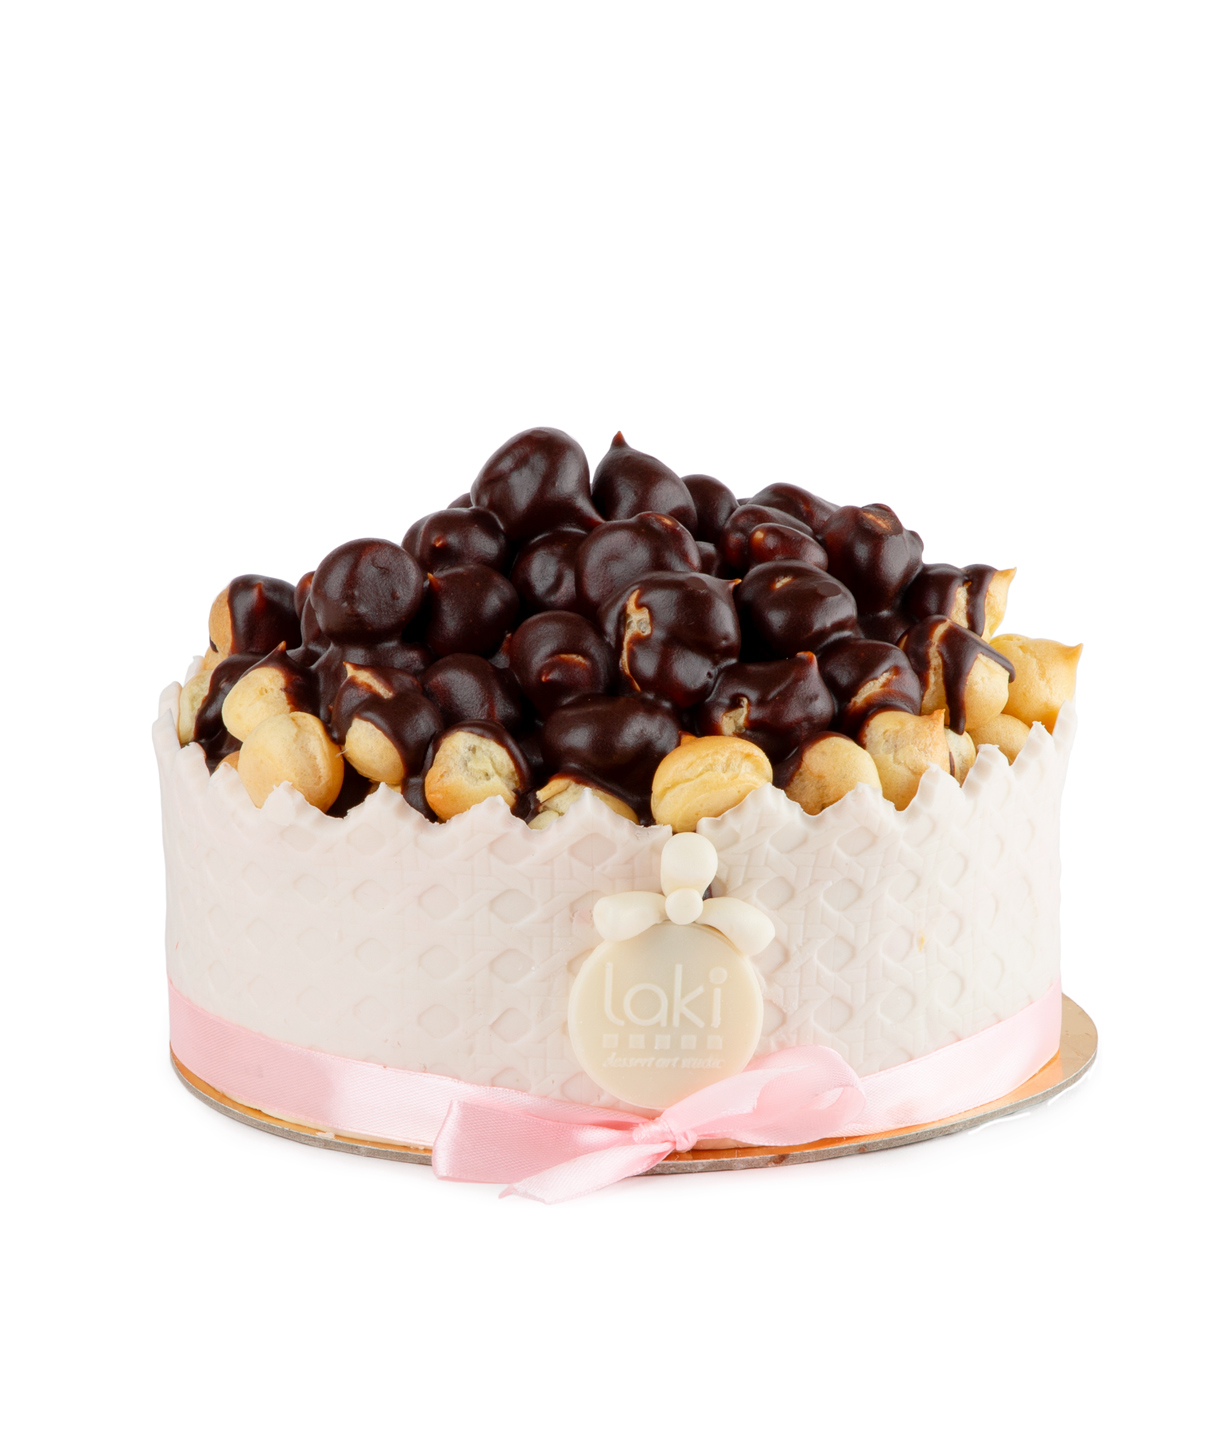 Cake `Laki`